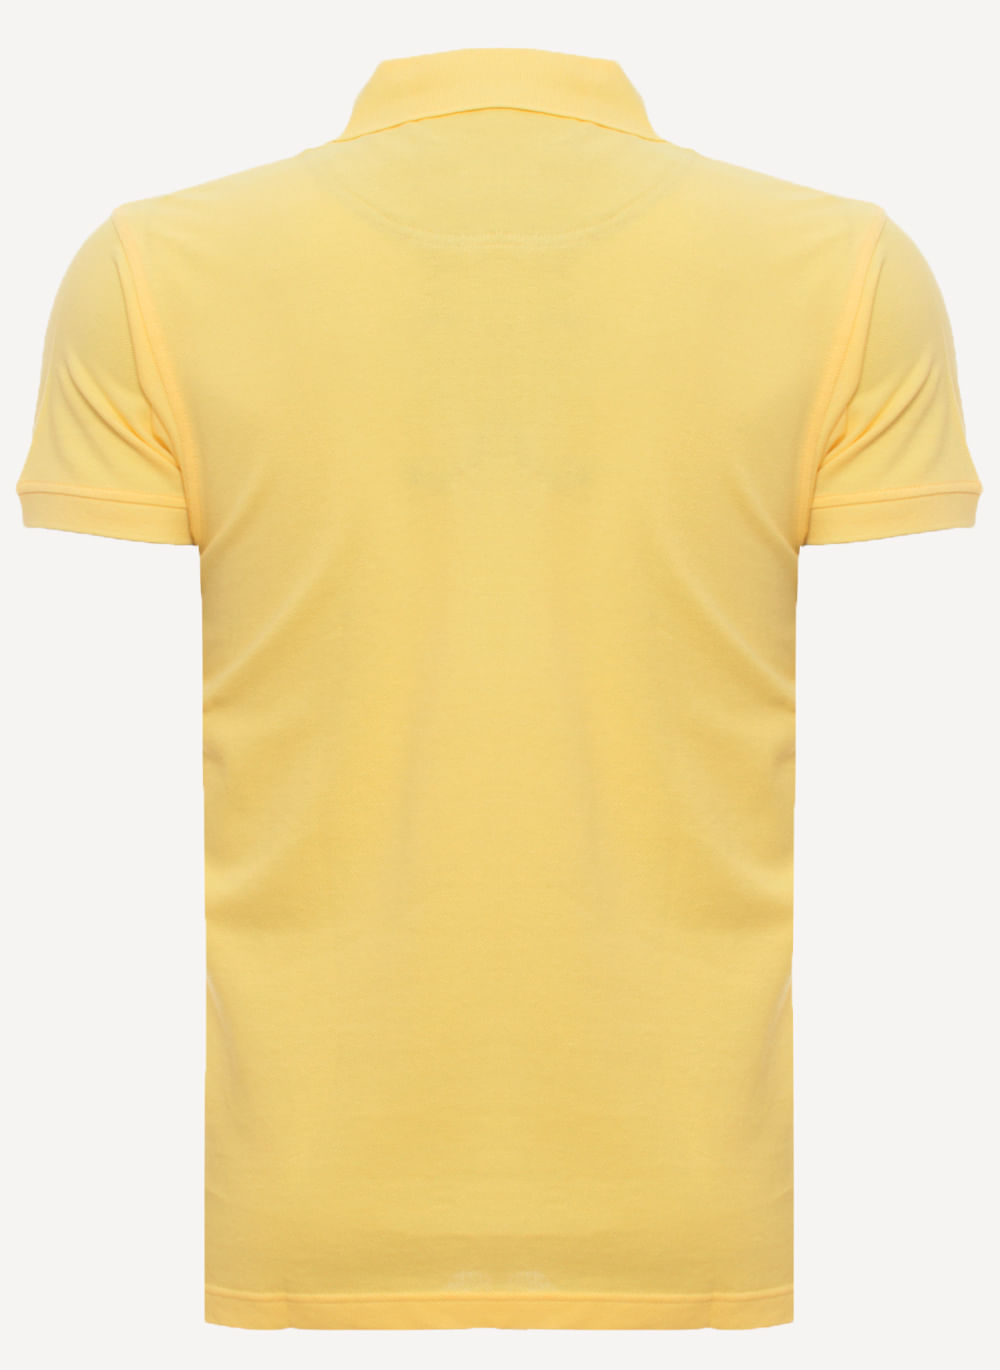 Camisa-Polo-Amarela-Lisa-Aleatory-Amarelo-Escuro-P